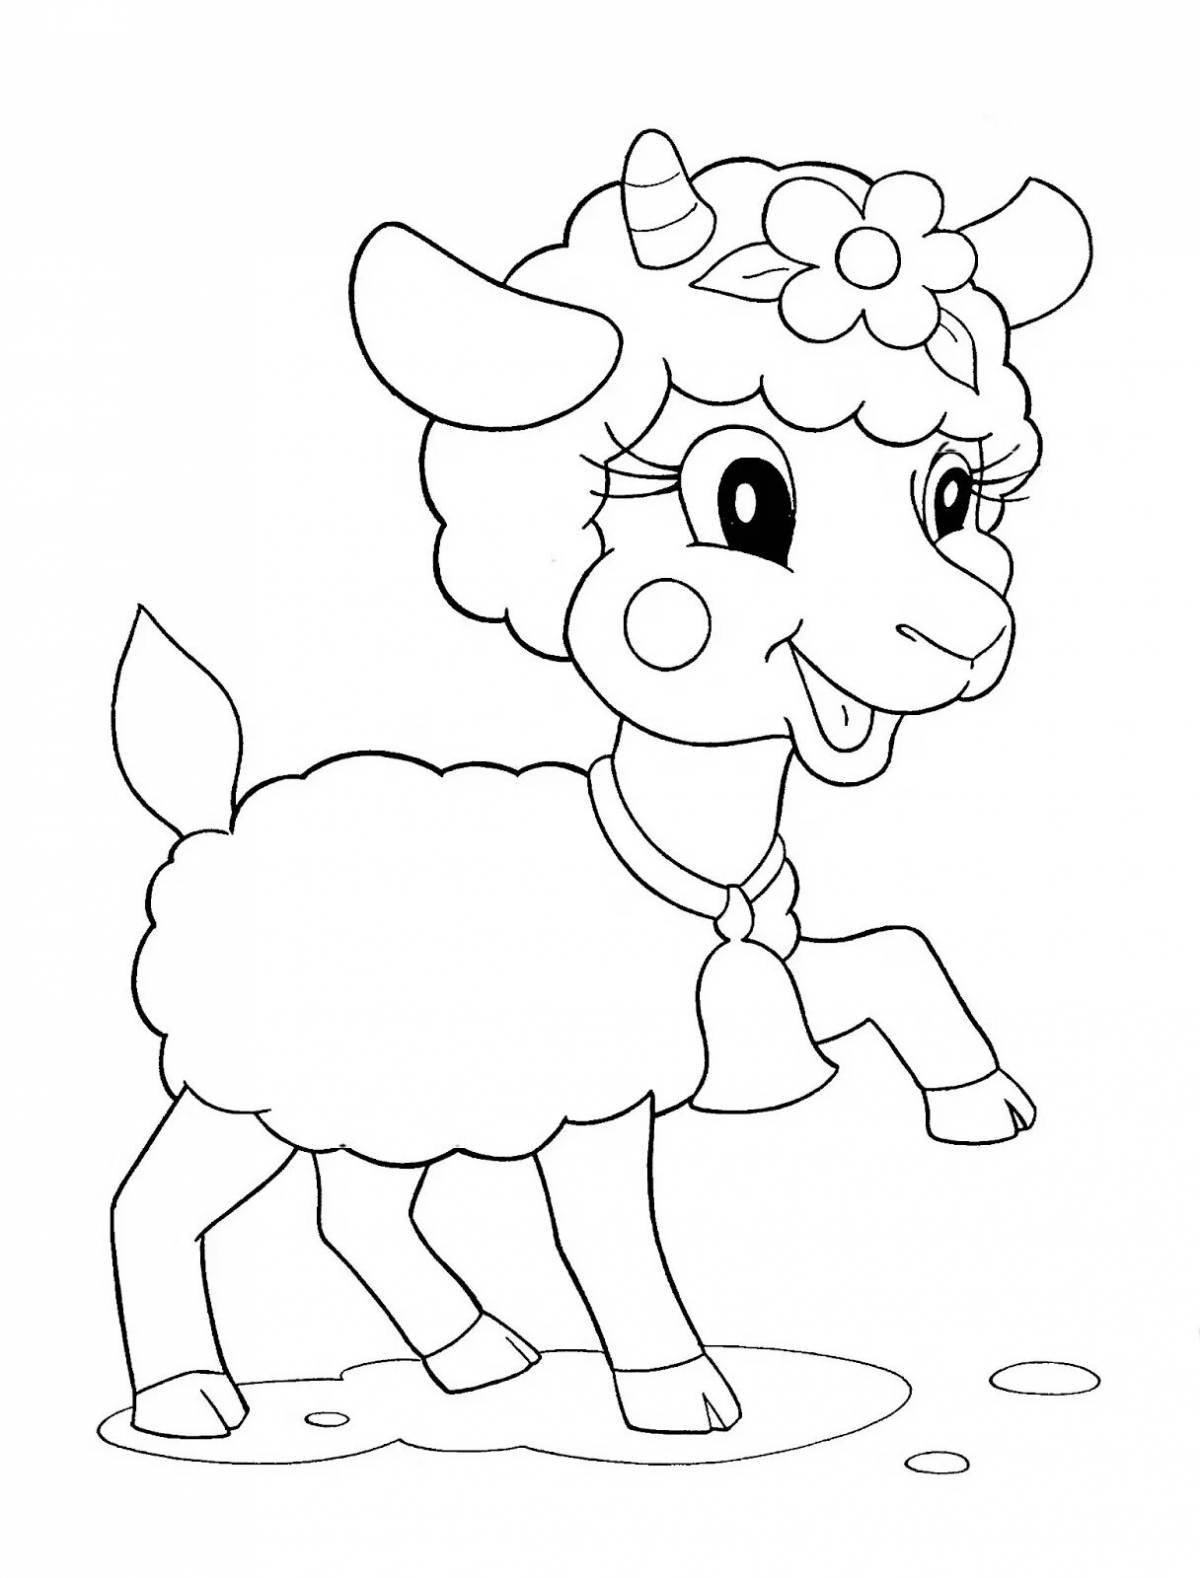 Раскраска радостная коза для детей